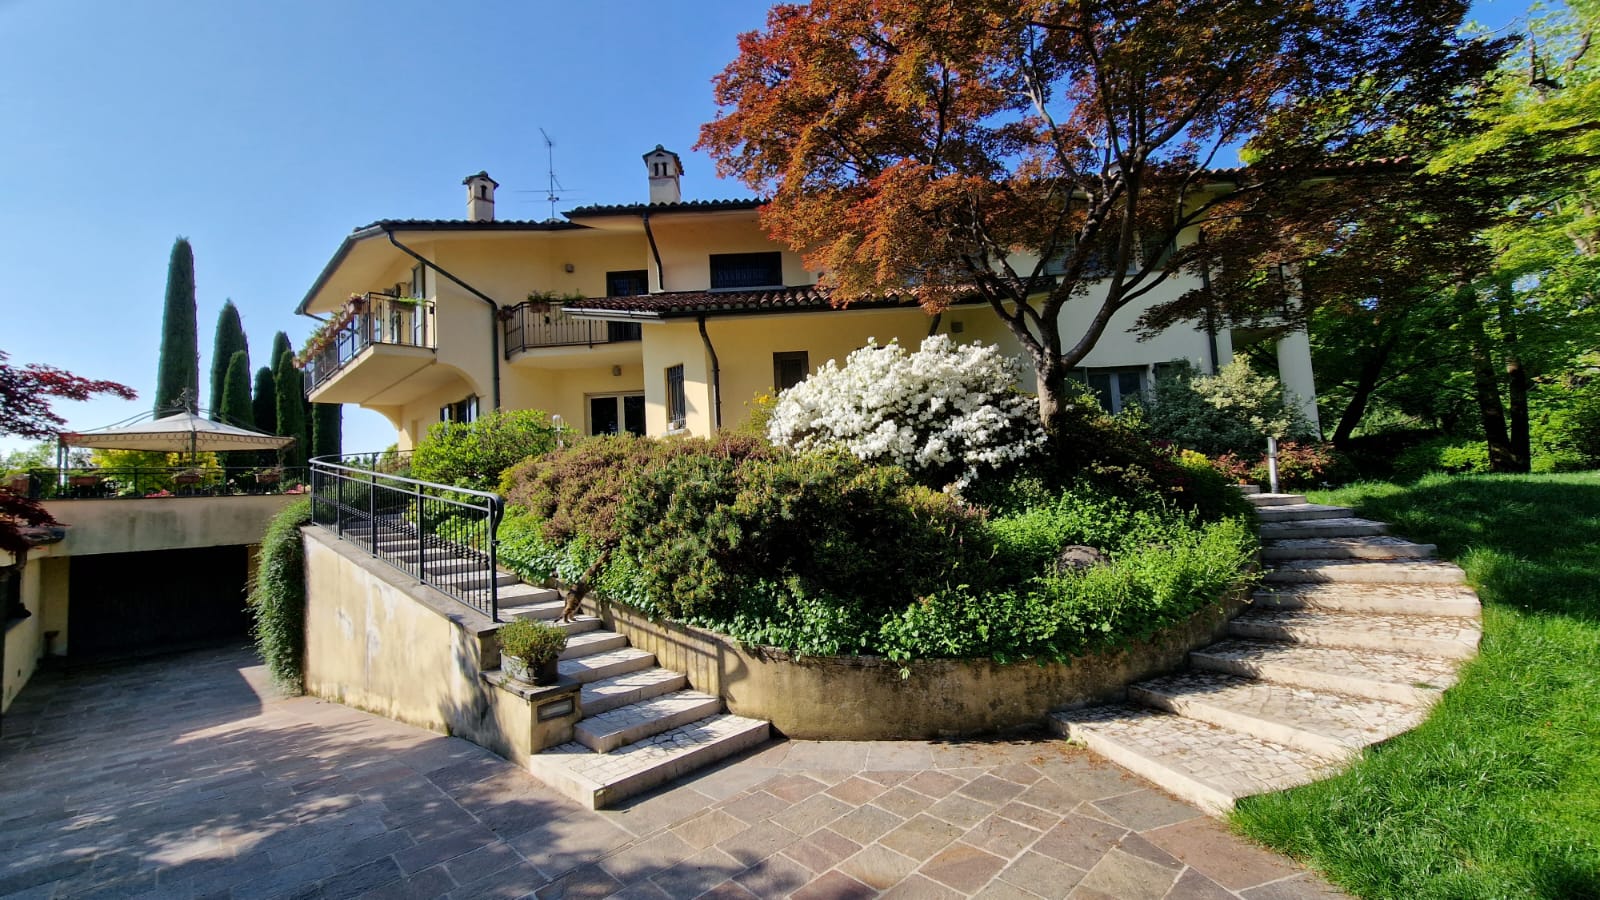 For sale villa in quiet zone Bergamo Lombardia